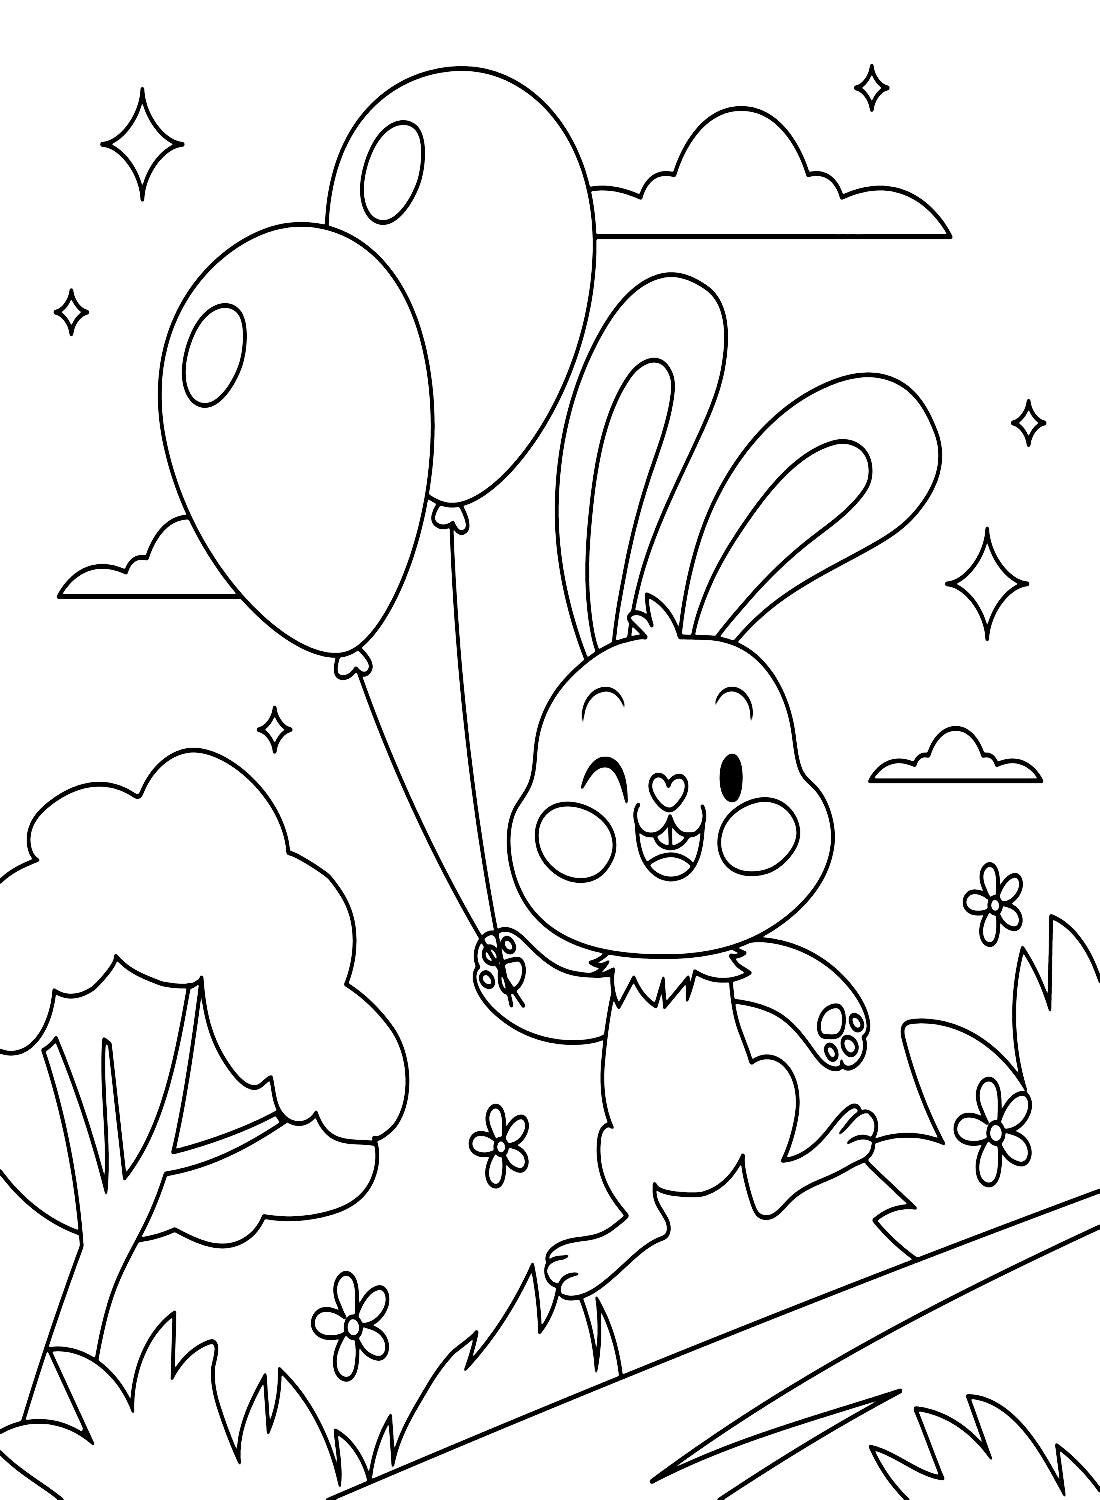 Coelho de desenho animado para pré-escola from Rabbit